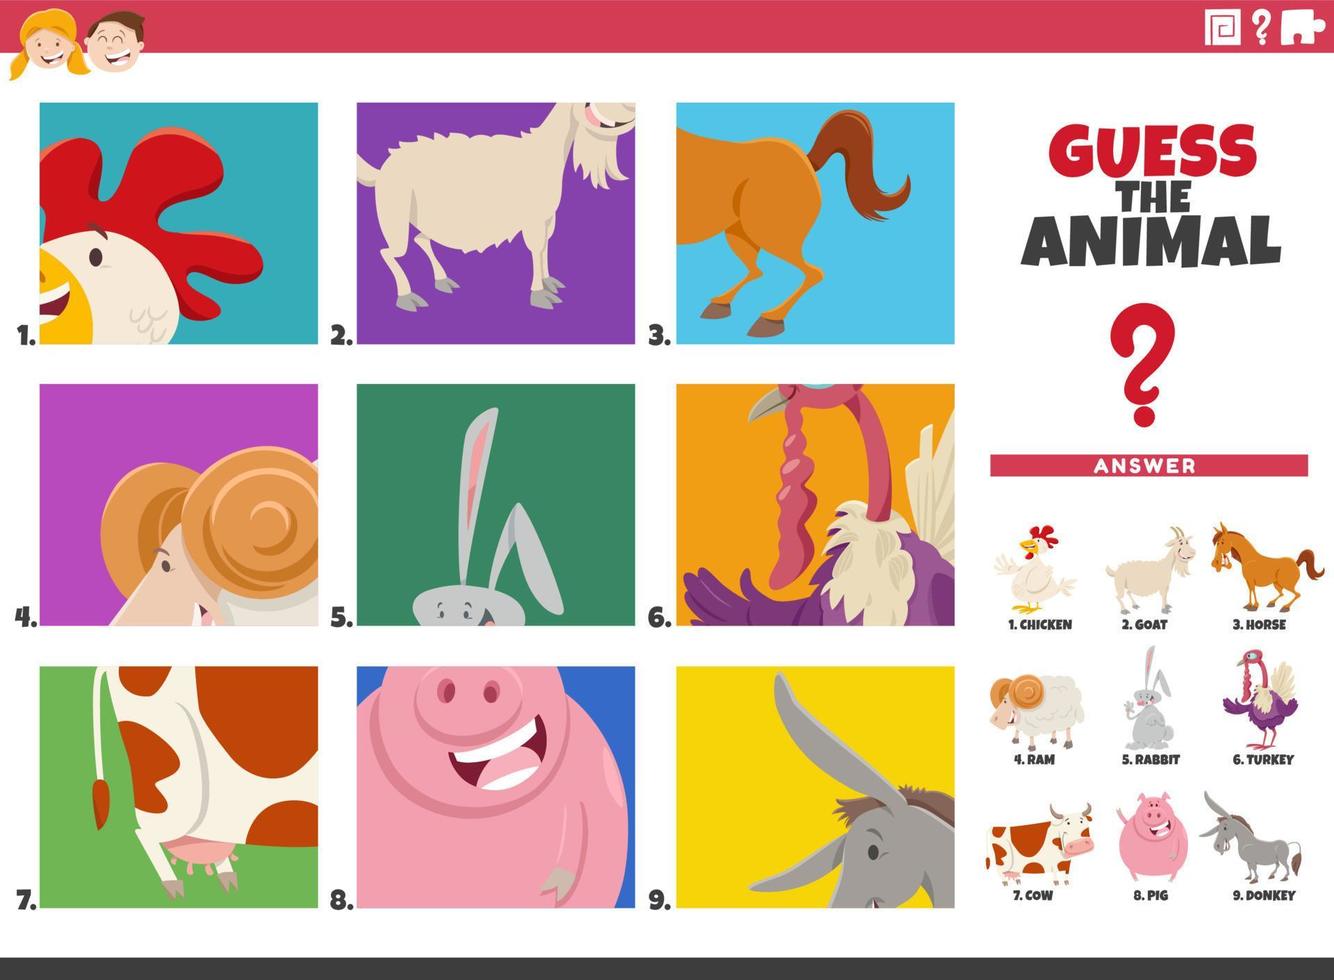 adivinar personajes de animales de dibujos animados juego educativo para niños vector